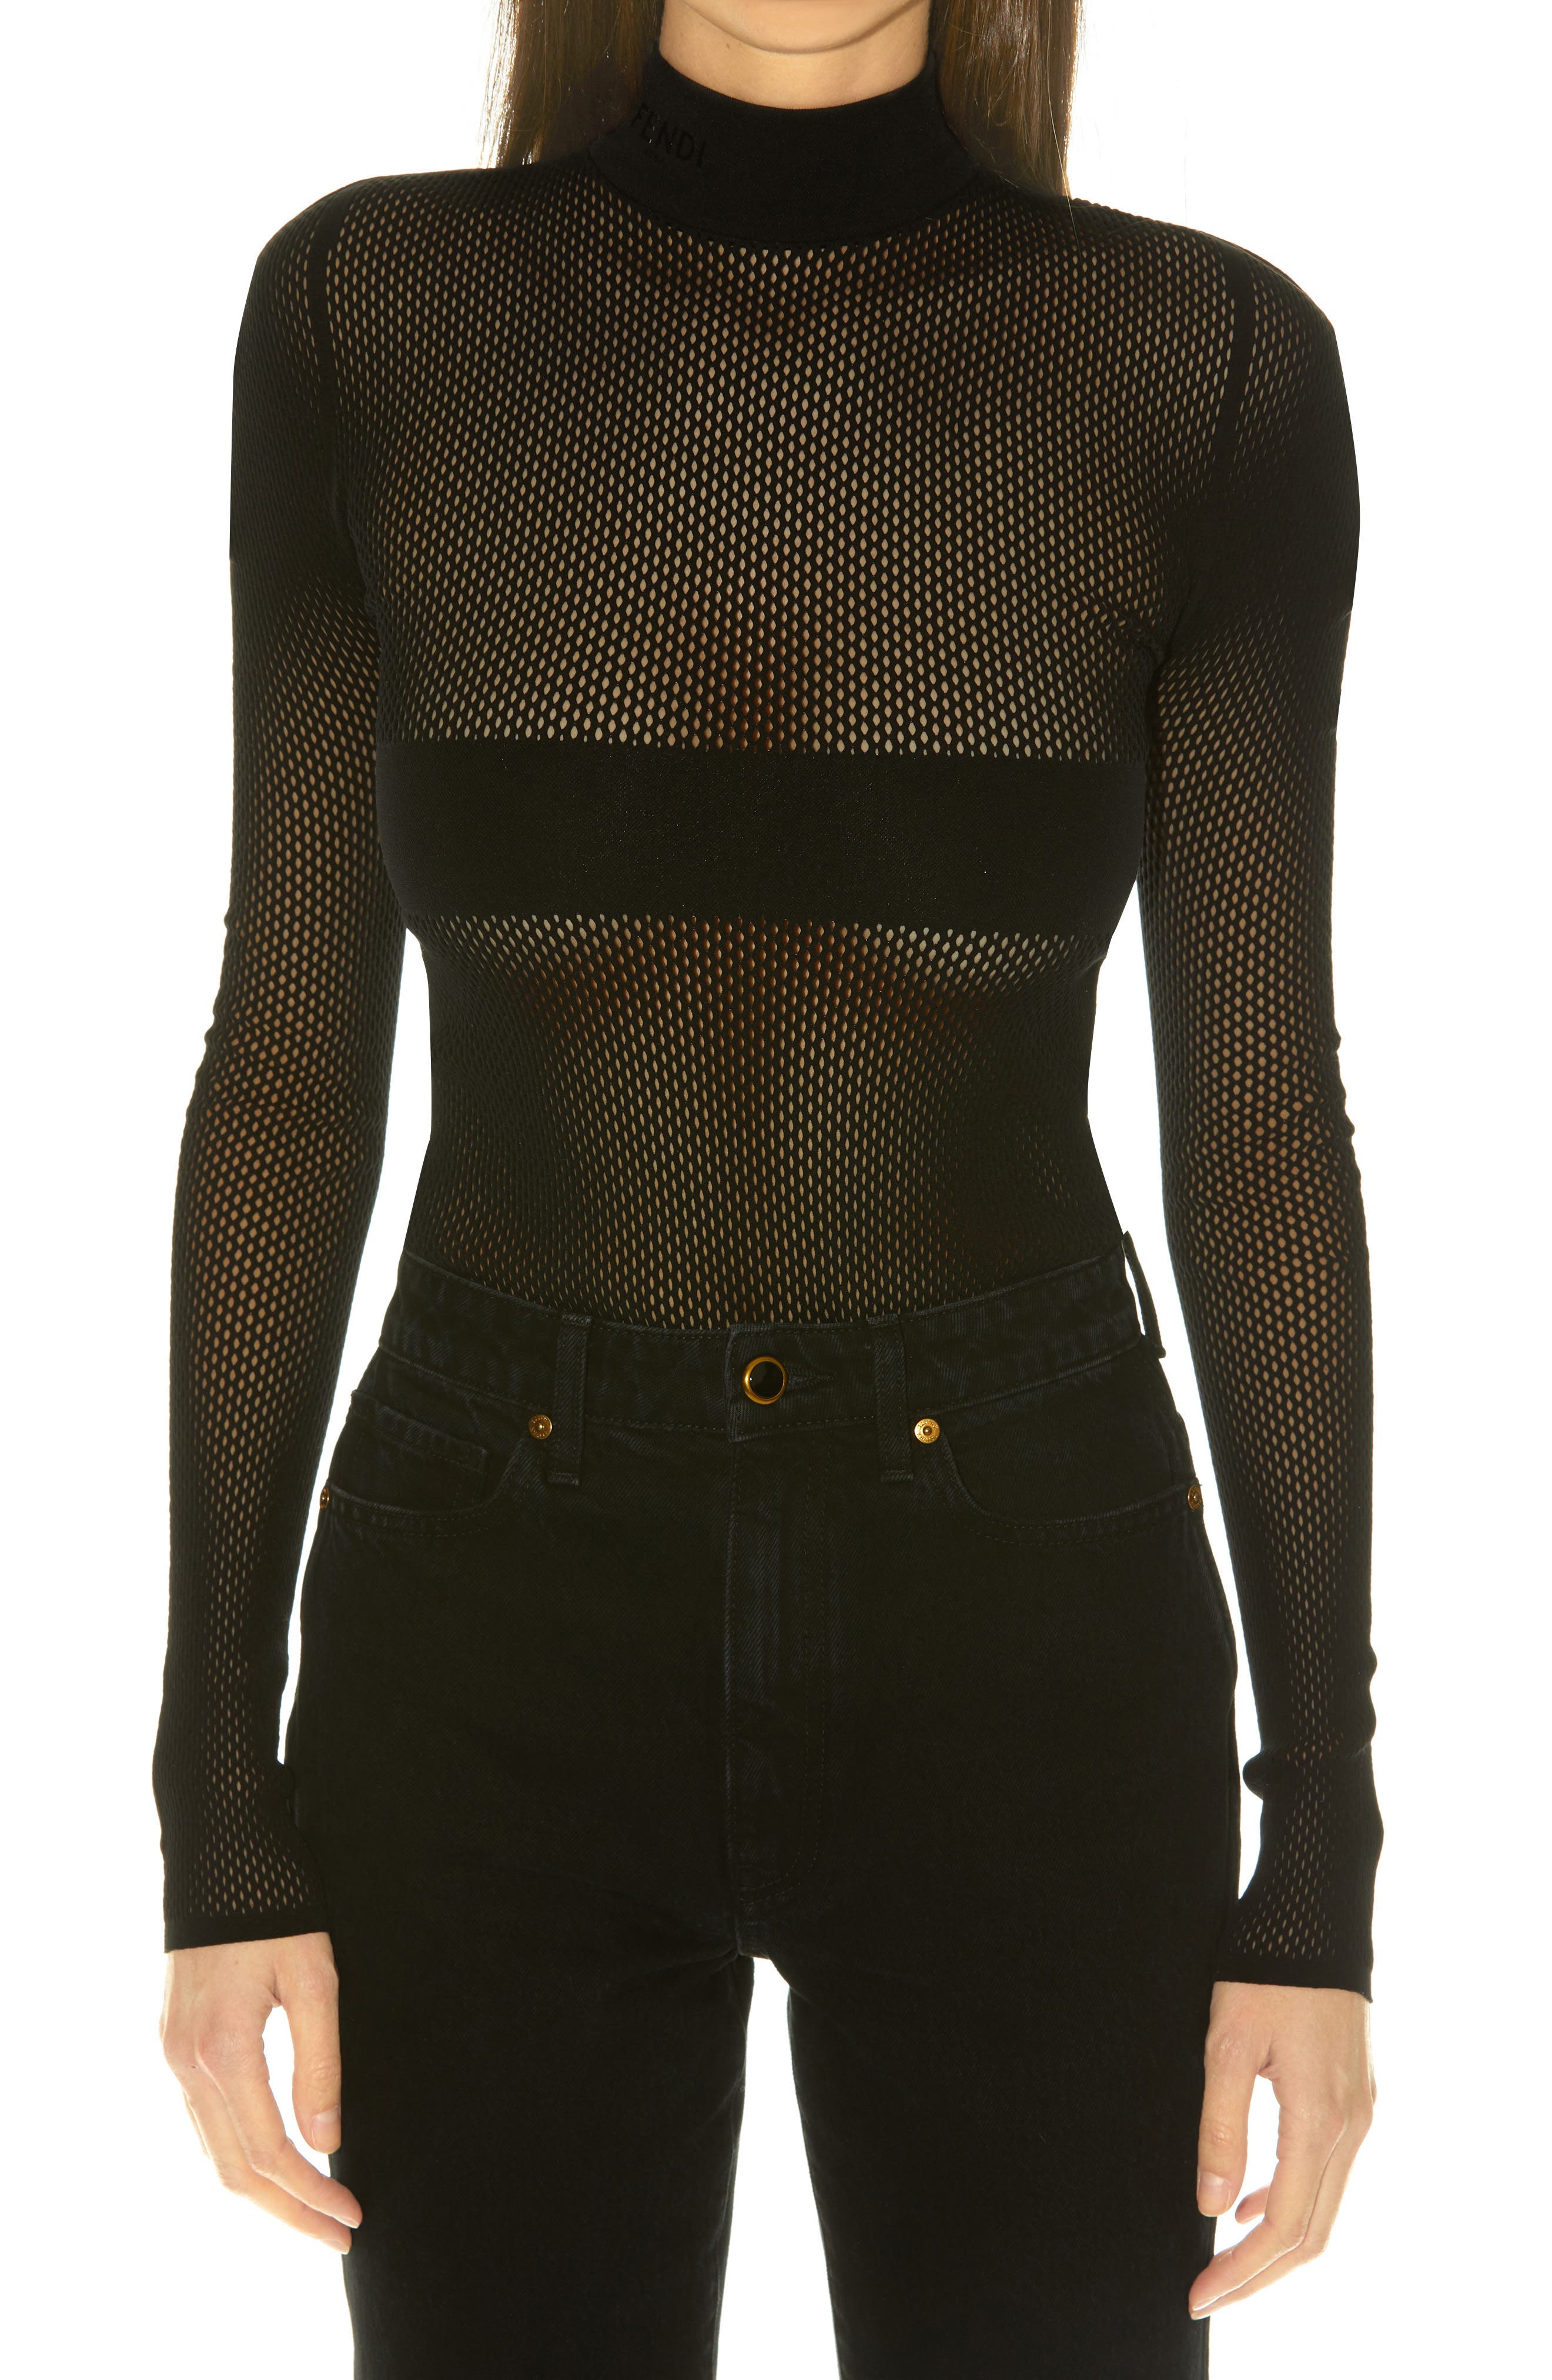 Fendi Micro Mesh Bra & Bodysuit in Black at Nordstrom, Size Medium